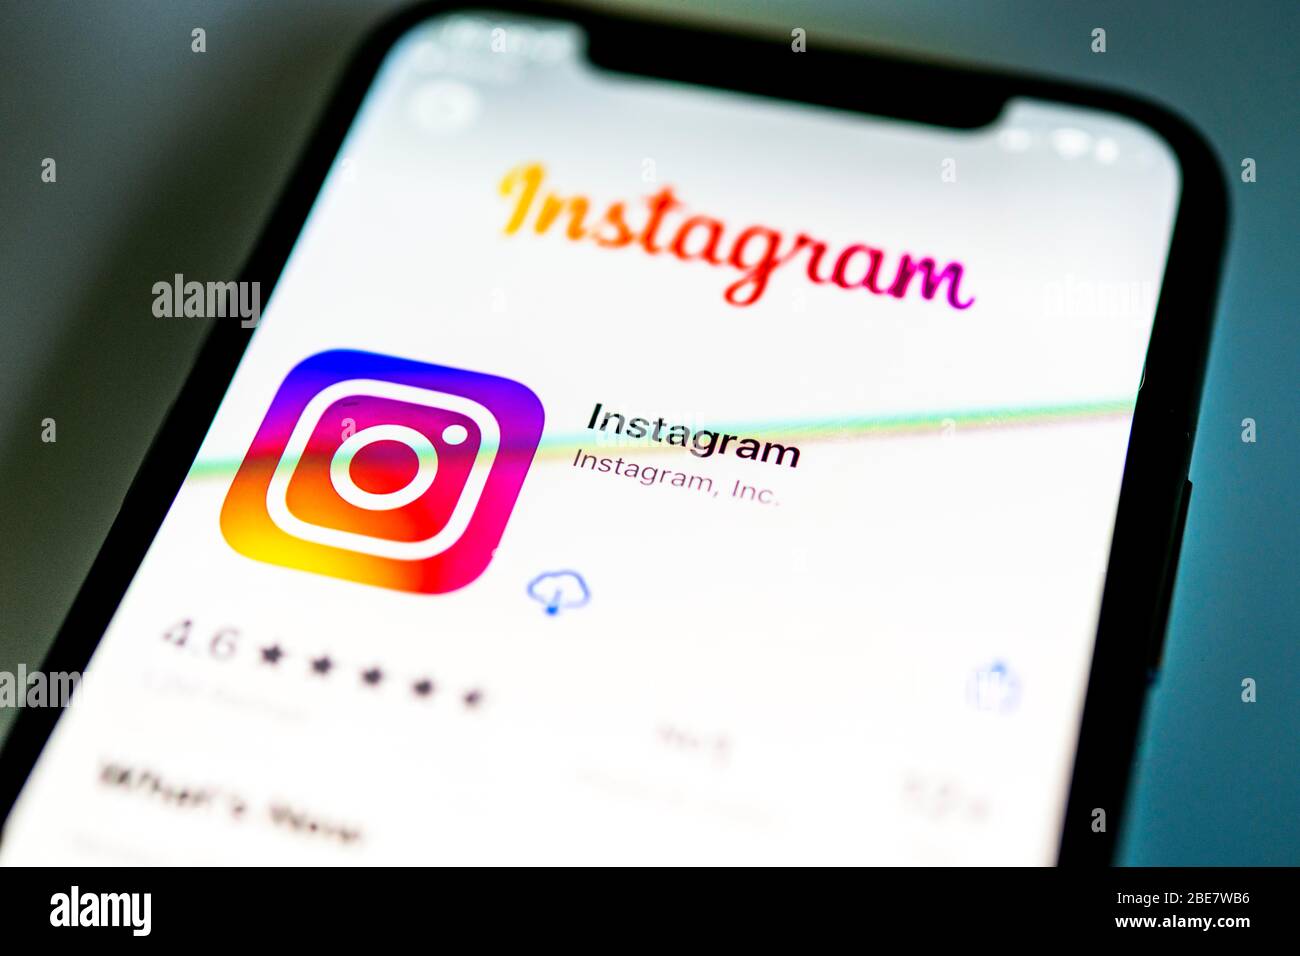 Application Instagram, réseau social, icône d'application, affichage à l'écran du téléphone mobile, du smartphone, des détails, plein écran Banque D'Images